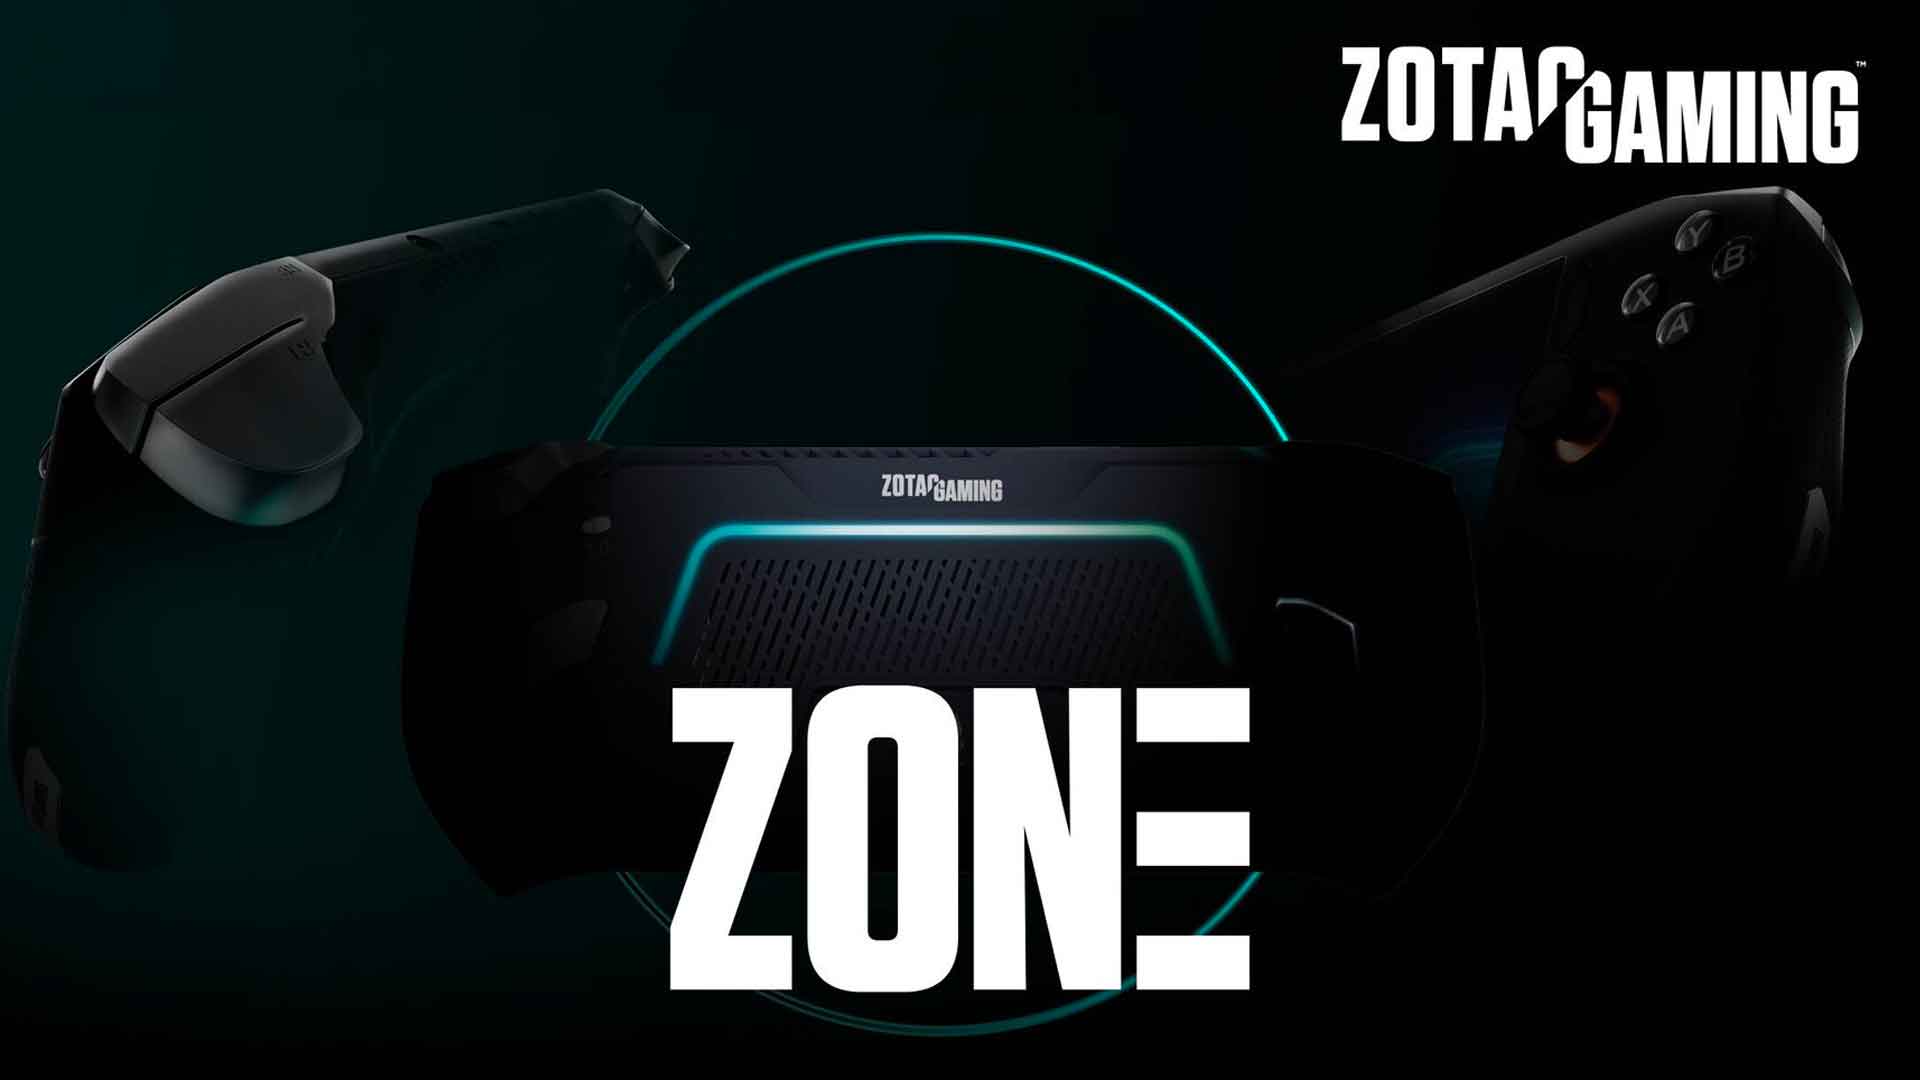 Console portable ZONE de Zotac